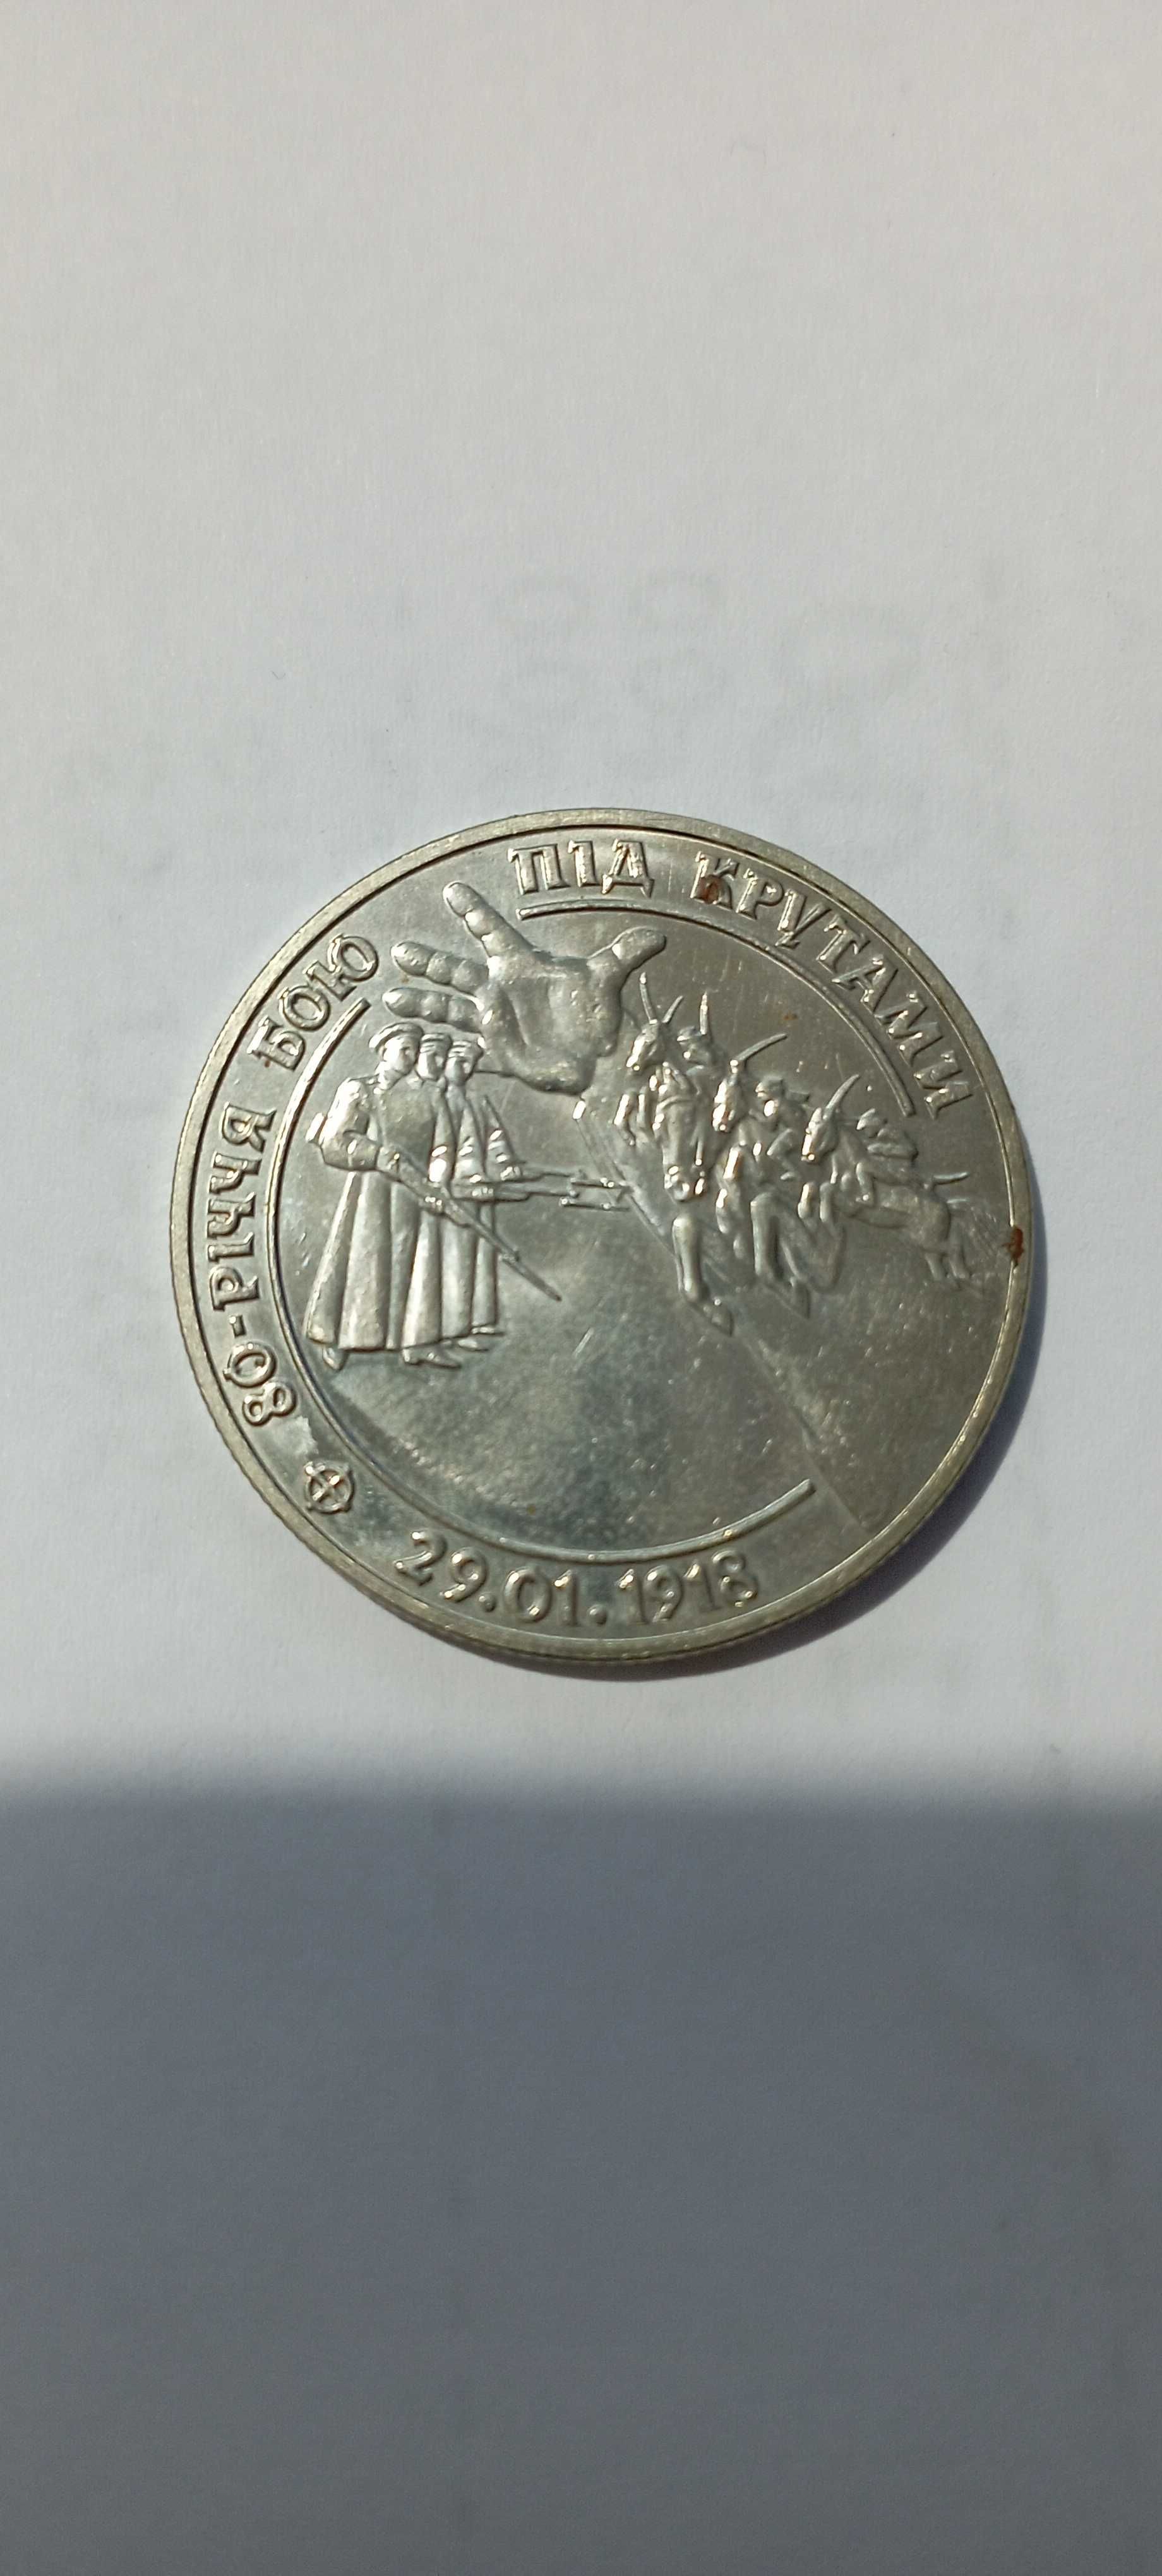 Продам монети 1996-1998 року випуску